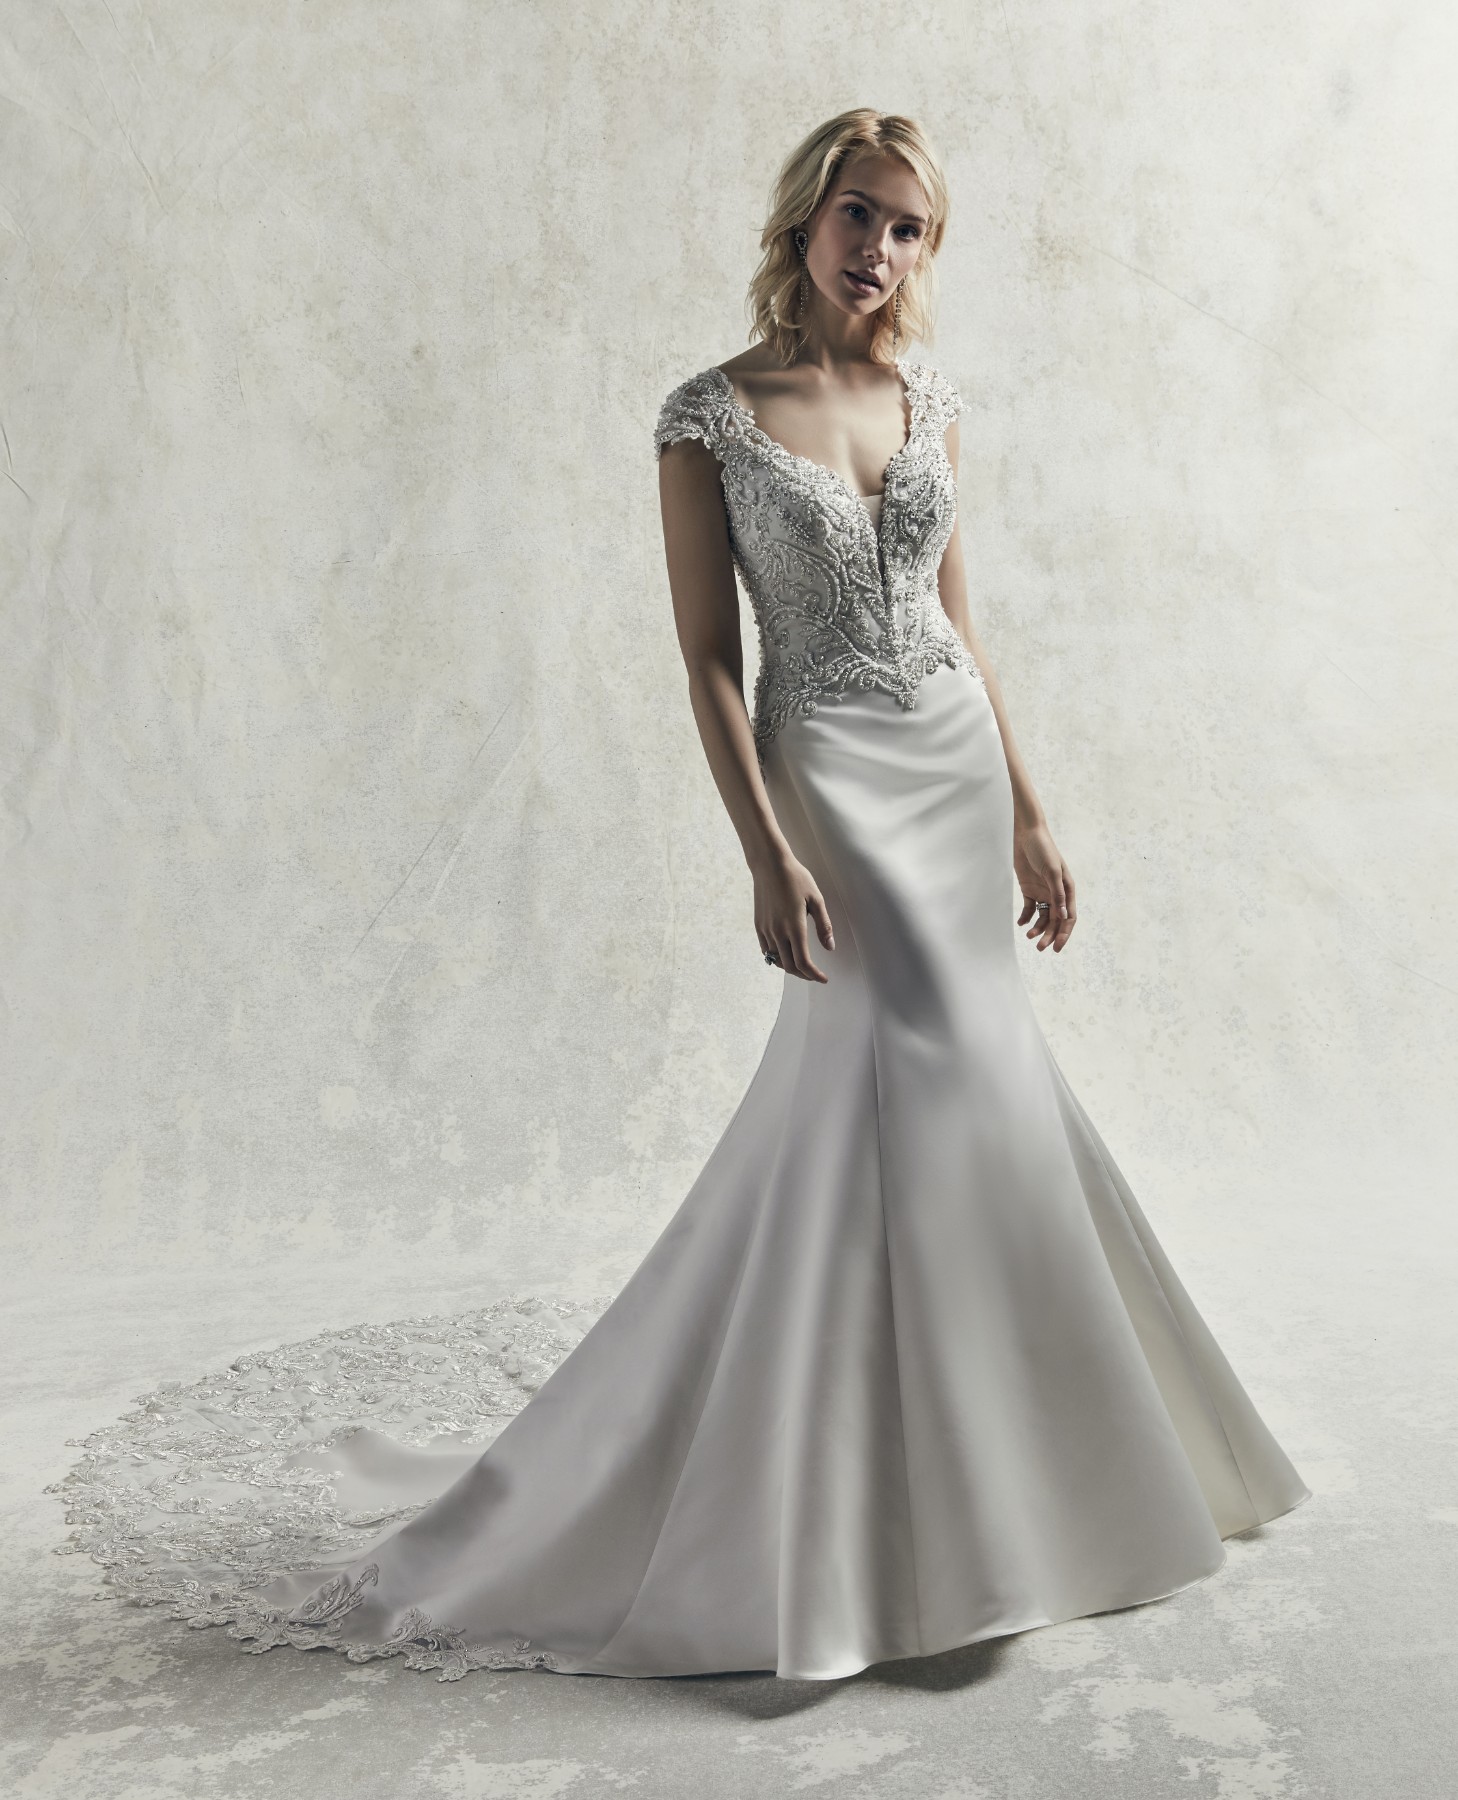 Detalhes de renda bordados e cristais Swarovski evocam um estilo mais vintage e glamouroso neste vestido de noiva fit-and-flare confecionado com cetim Carlo. 